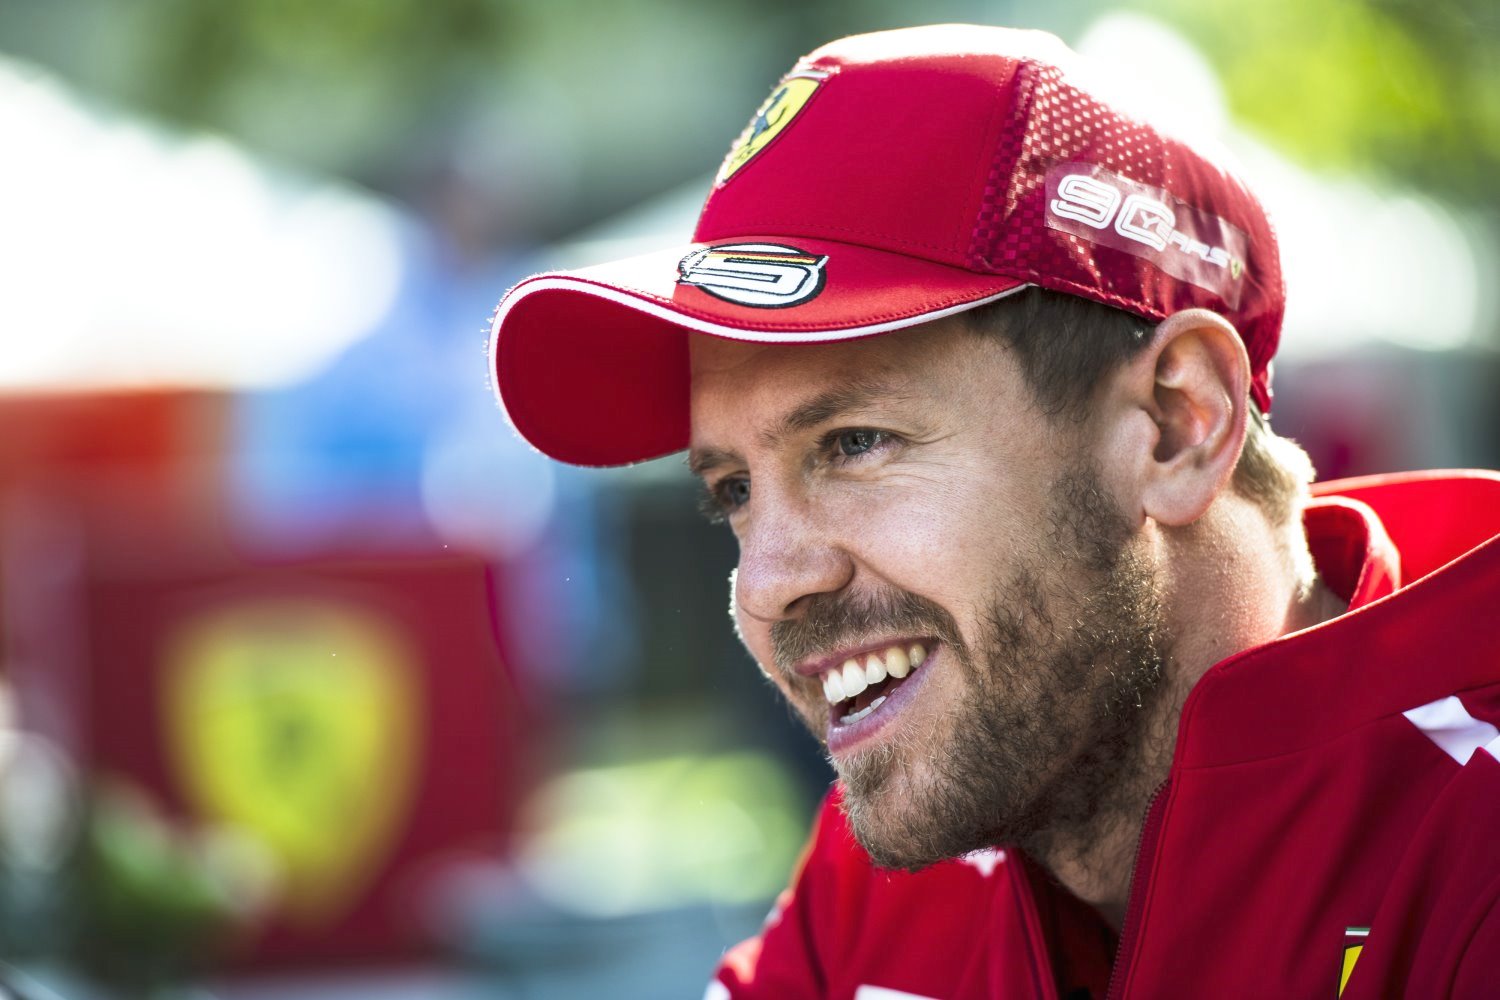 Vettel called Mercedes claims of struggling bullshit